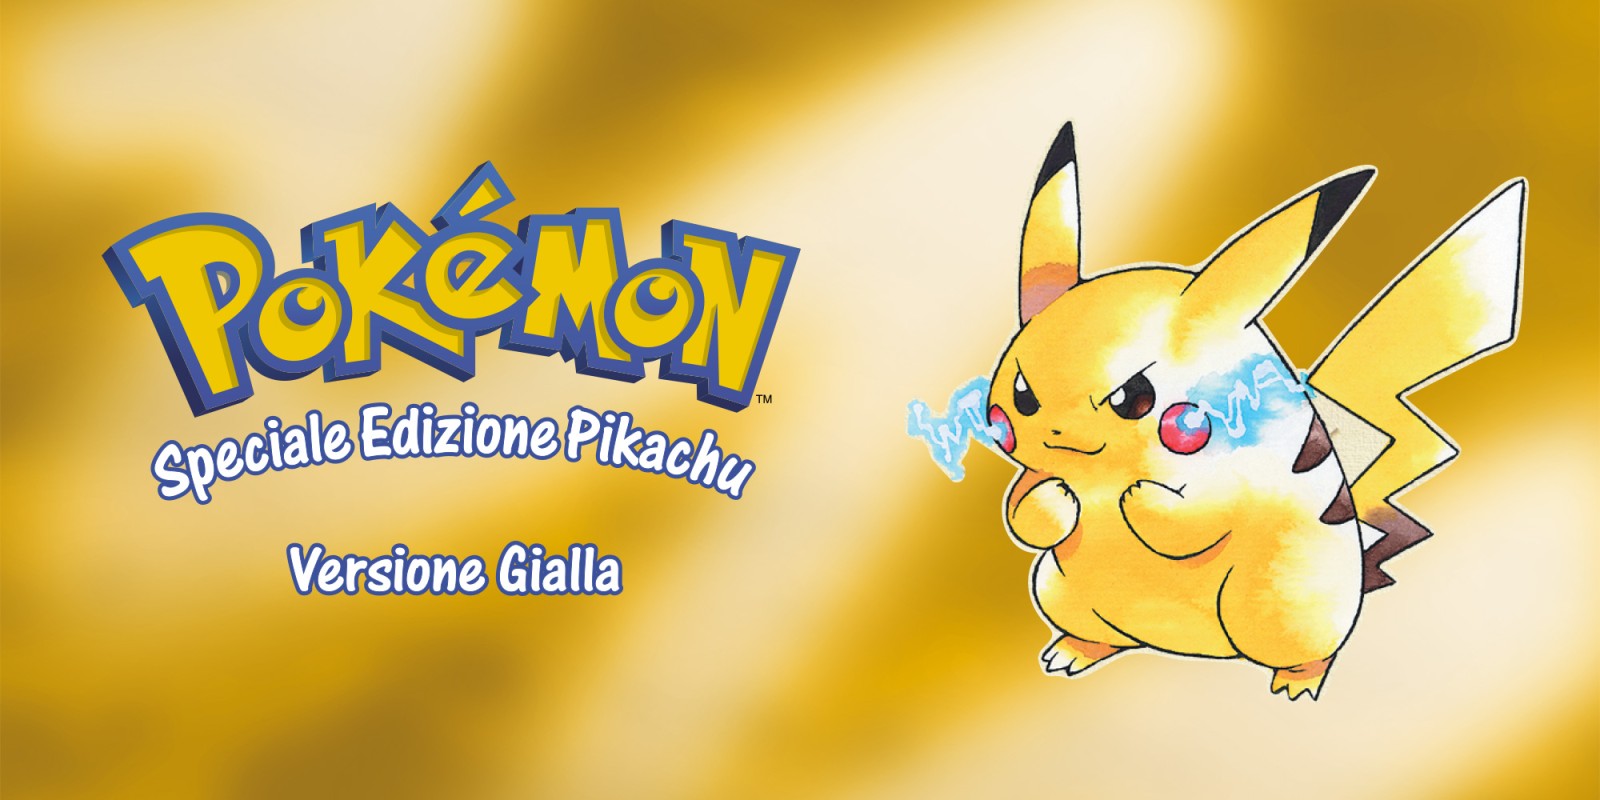 Pokémon Versione Gialla: Speciale Edizione Pikachu